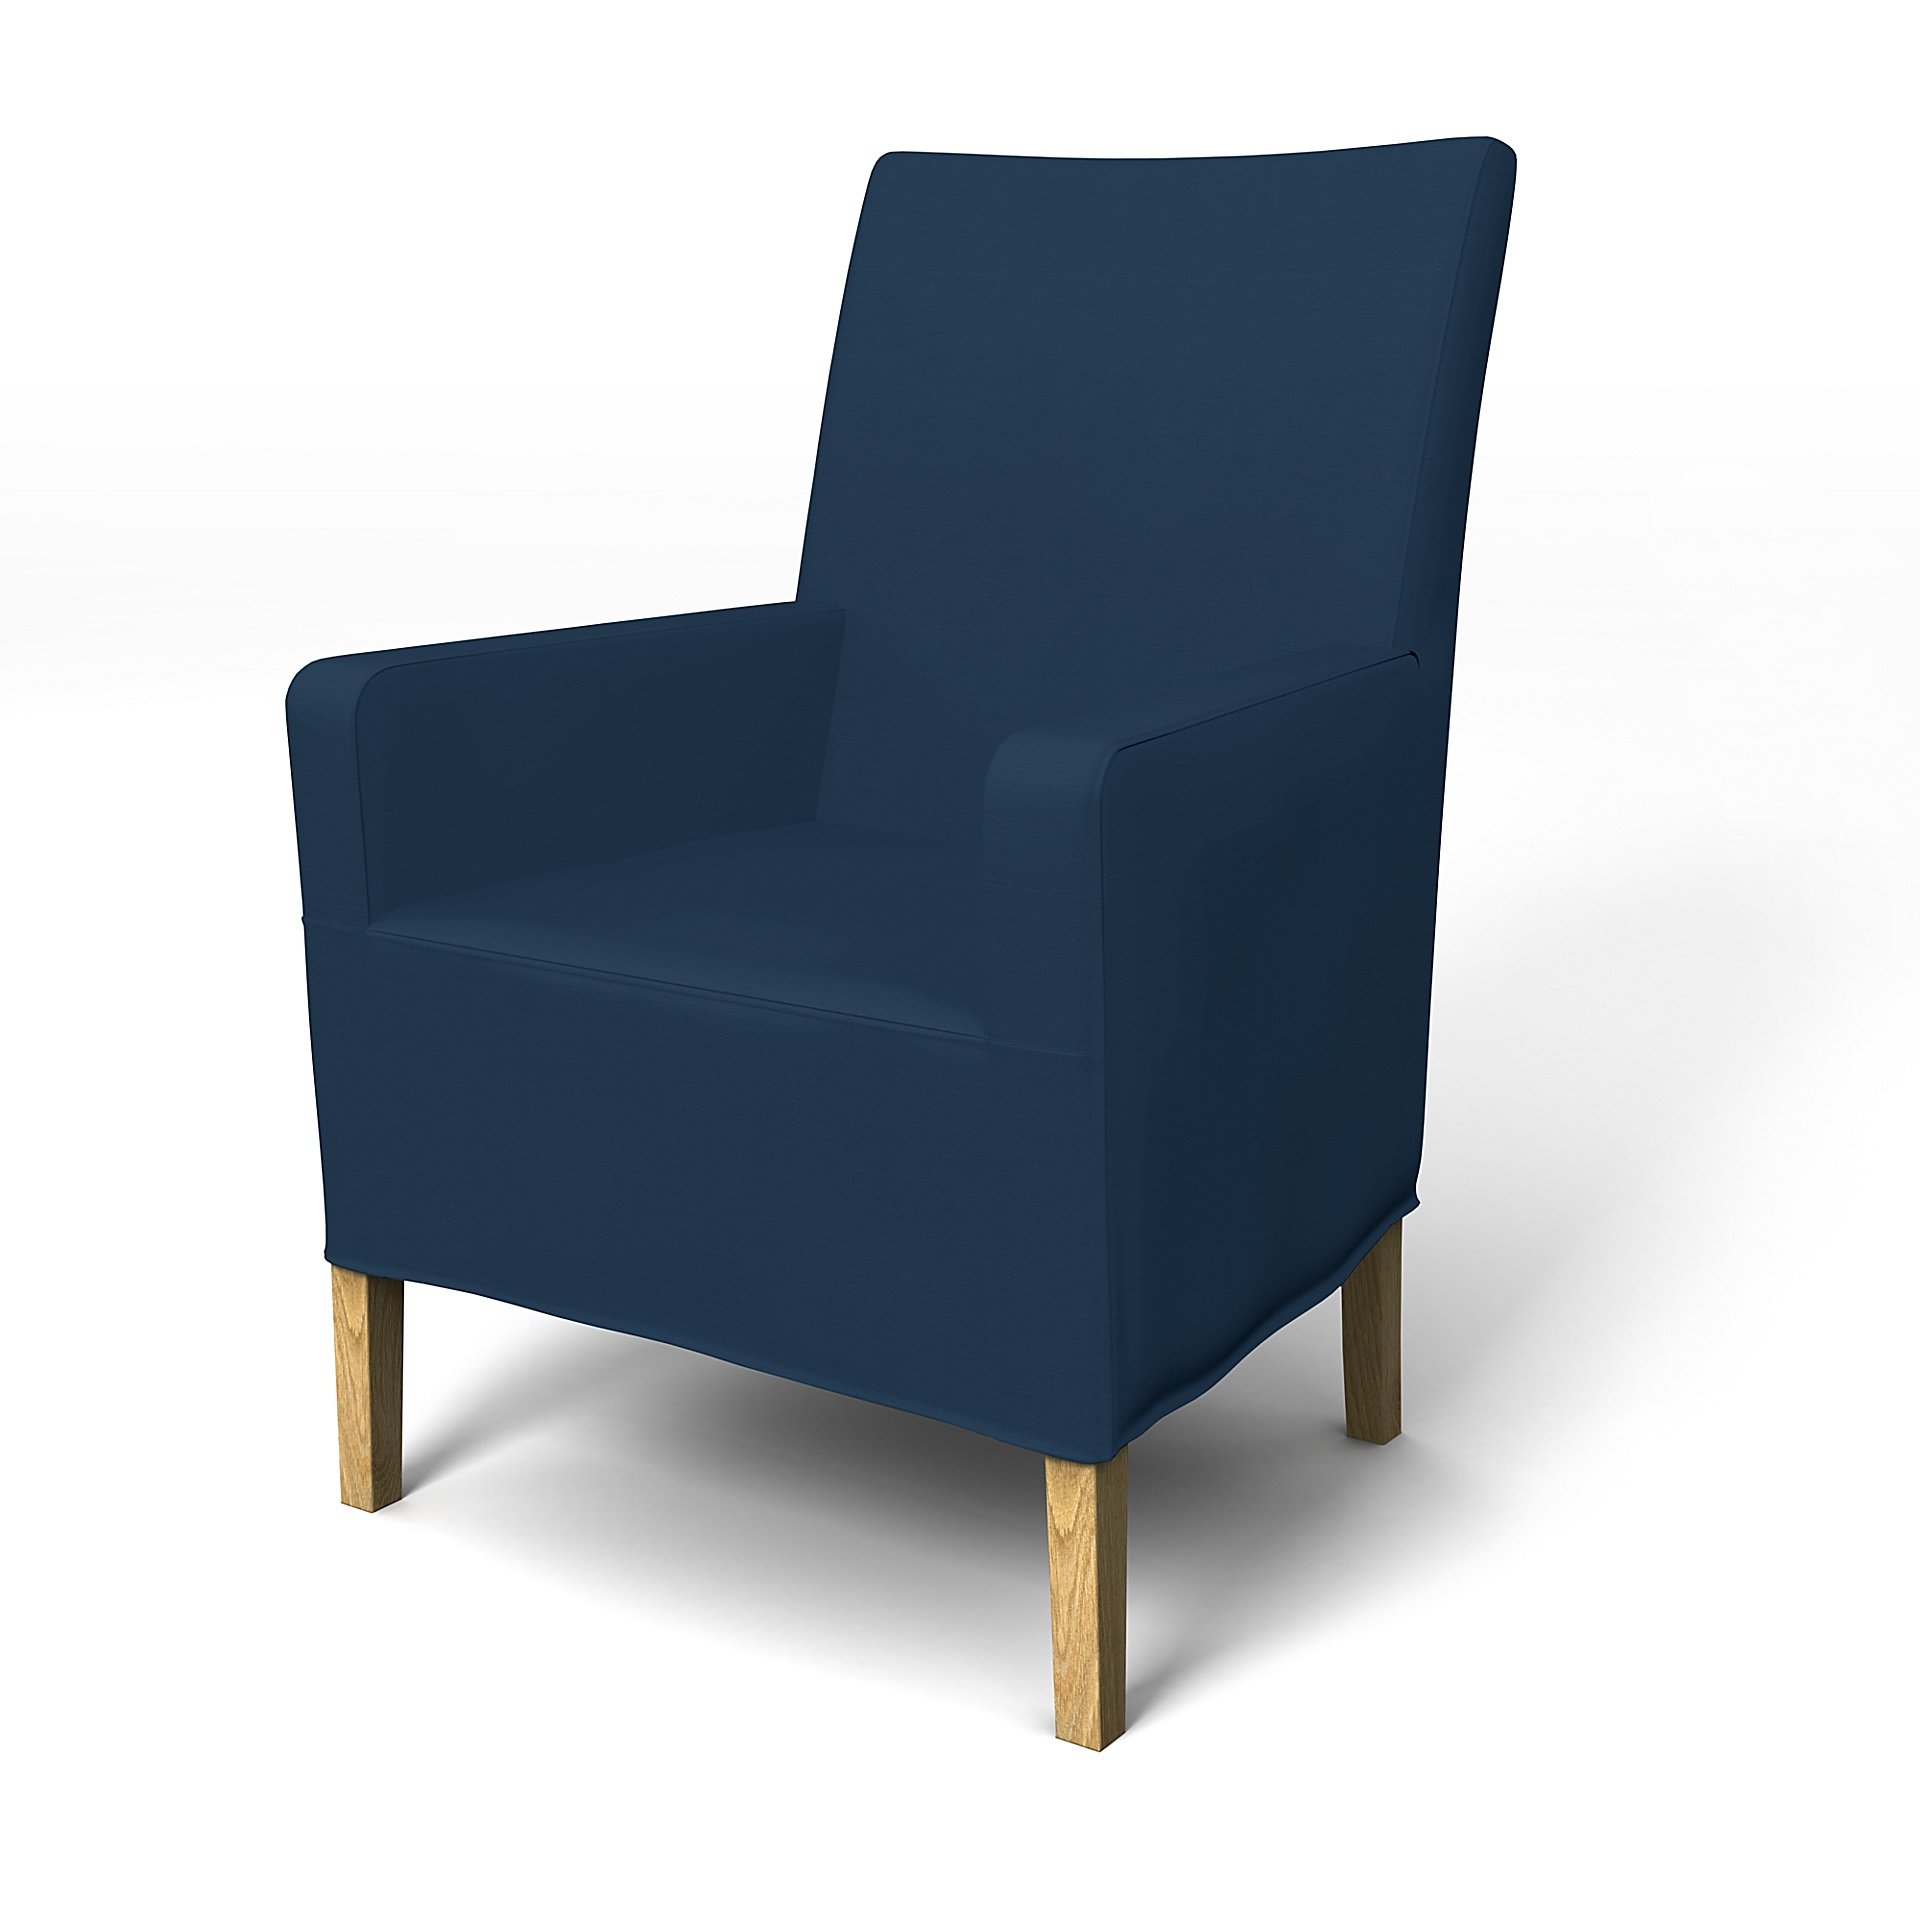 IKEA - Henriksdal, Chair cover w/ armrest, medium length skirt, Deep Navy Blue, Cotton - Bemz